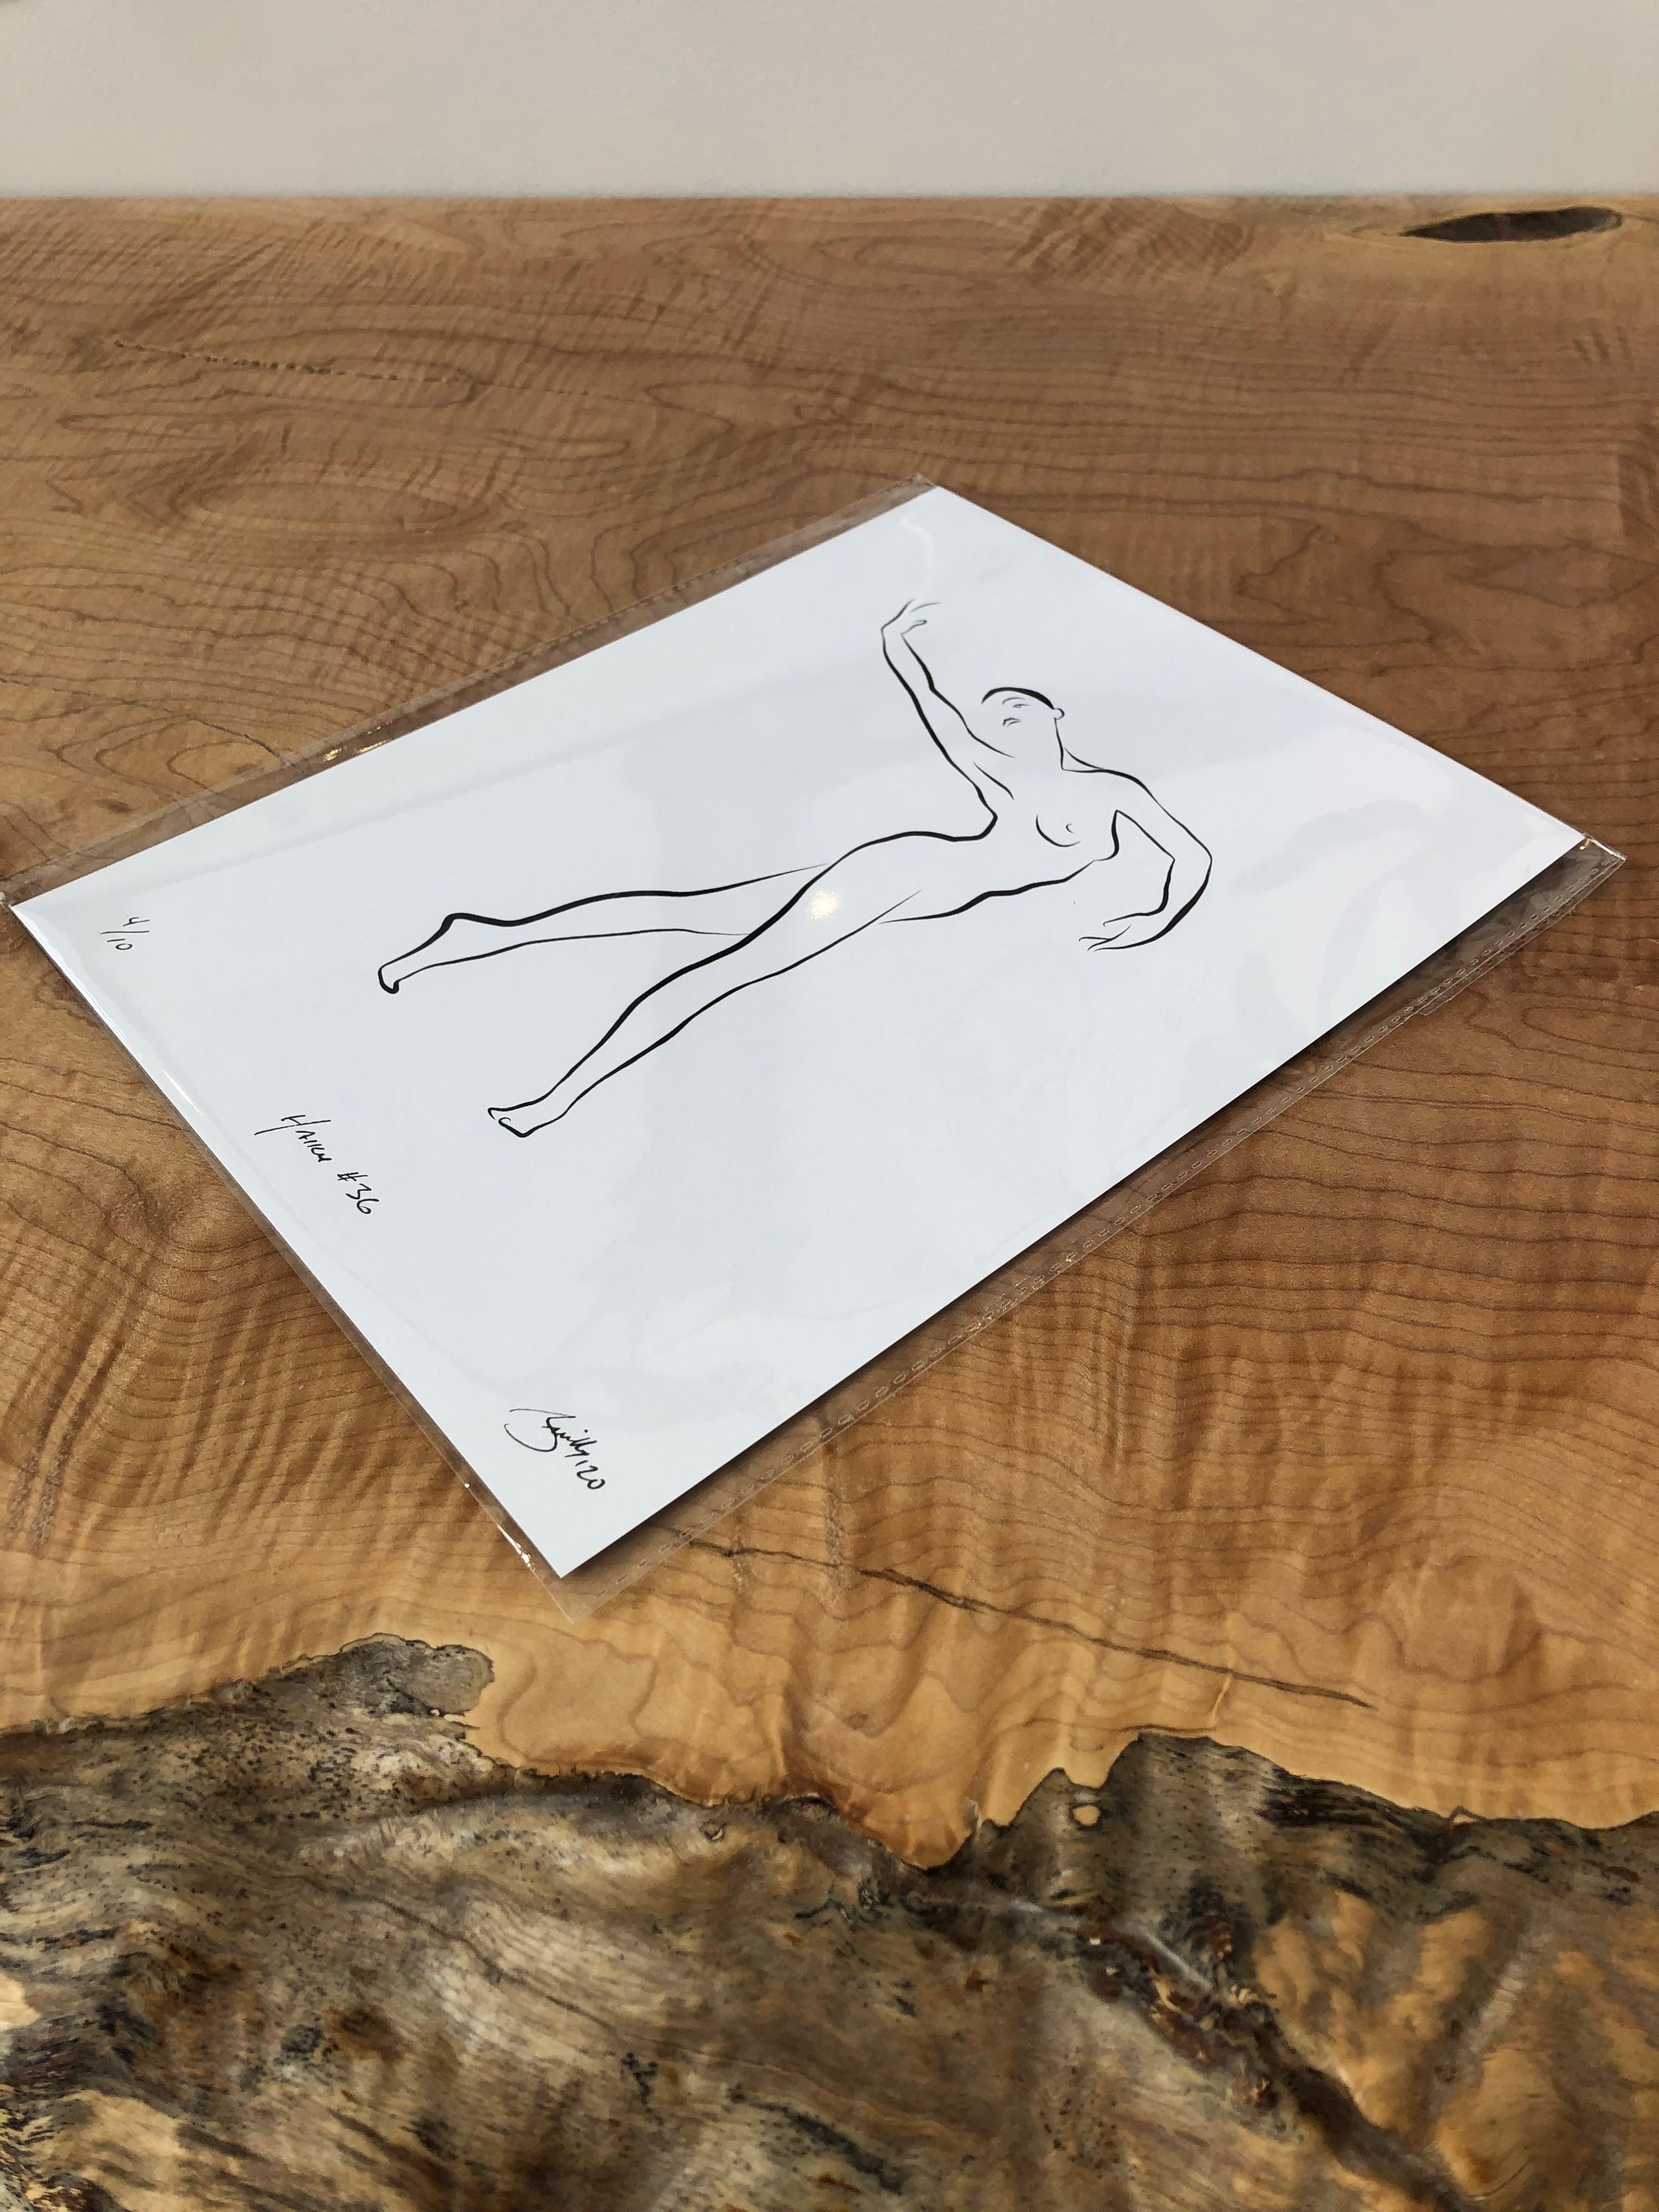 Haiku #36, 3/50 - Digital Vector Drawing Graceful Dancing Female Nude Woman Fig - Print by Michael Binkley